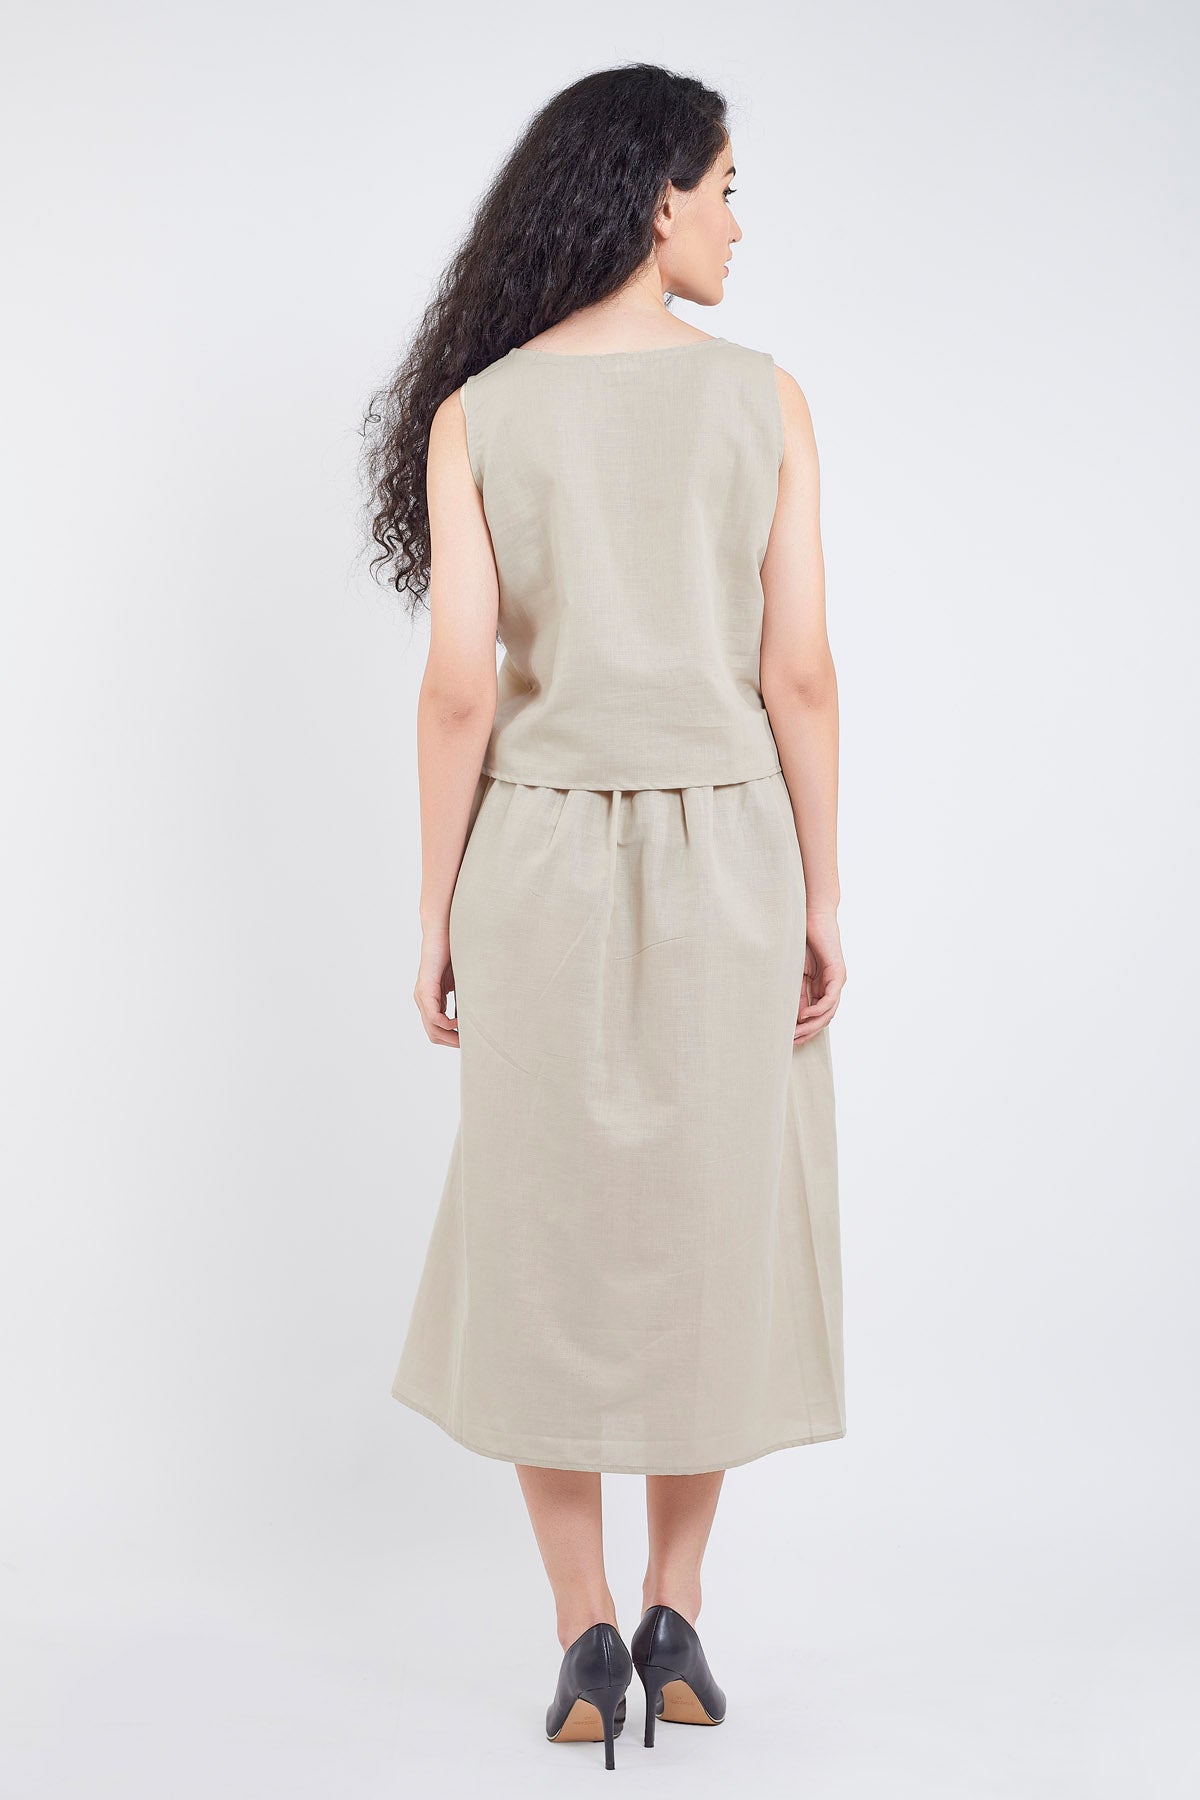 Beige Cotton Linen Skirt Set